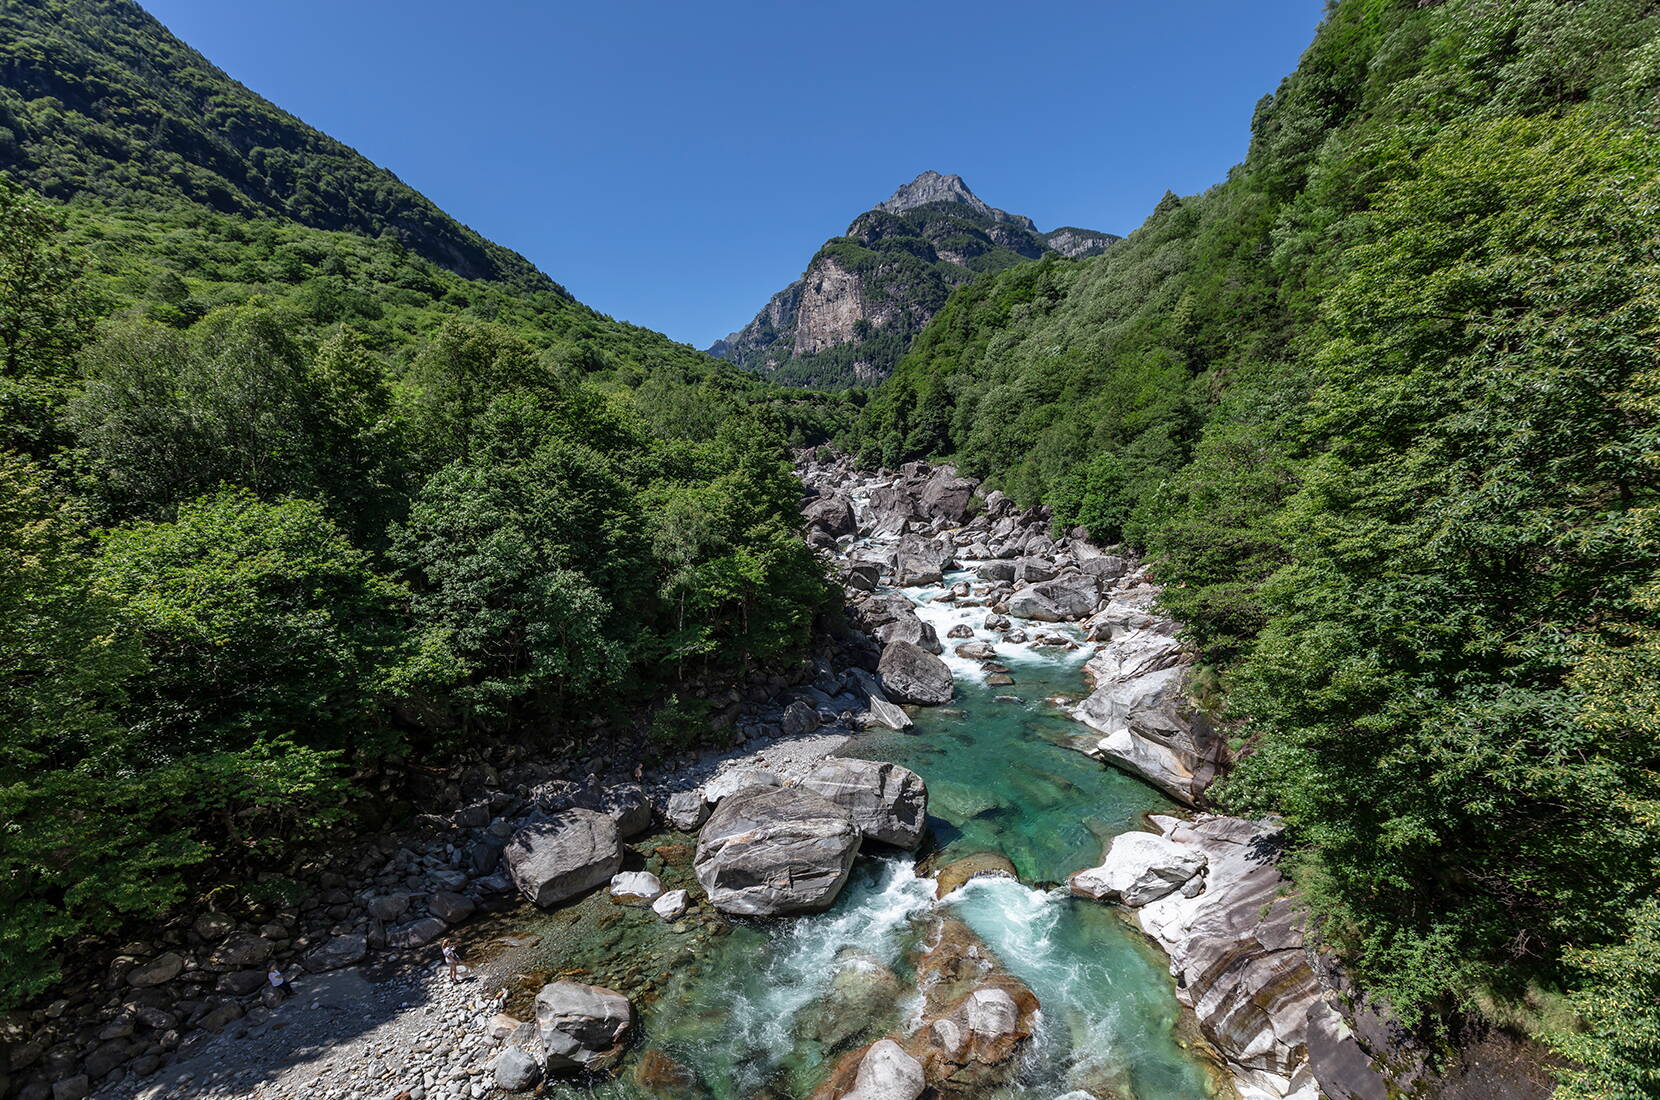 Familienausflug Sentierone Verzasca. Eine der schönsten Wanderungen im Tessin, entlang der Verzasca durch das ganze Tal bis nach Sonogno verläuft.